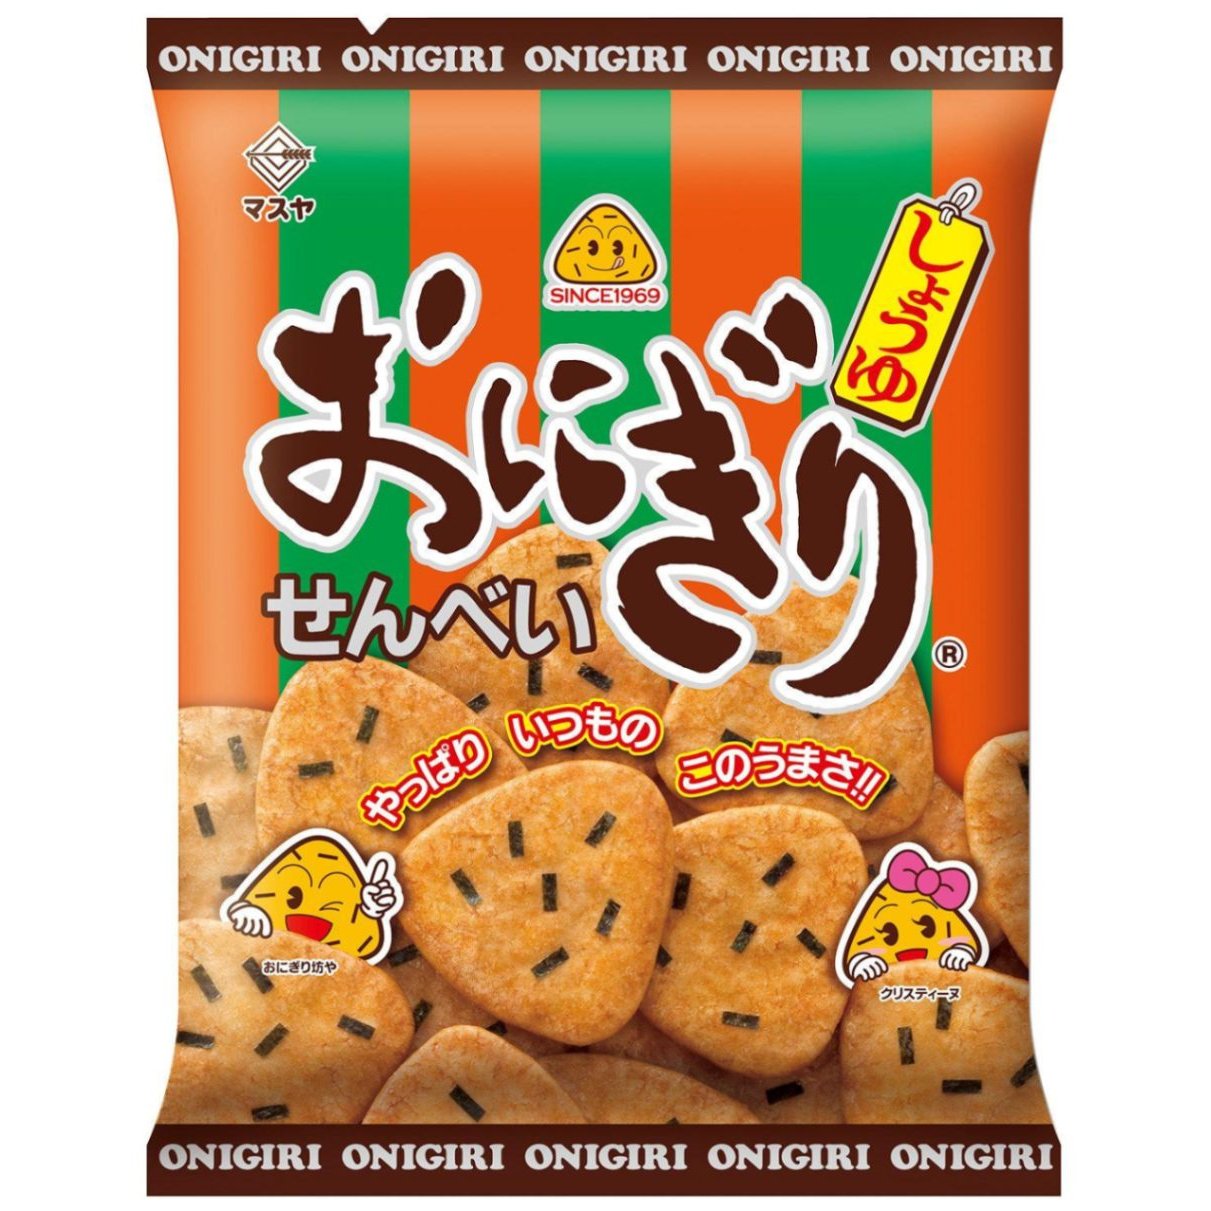 Masuya Onigiri Senbei Soy Sauce Flavored Rice Crackers (Box of 12)